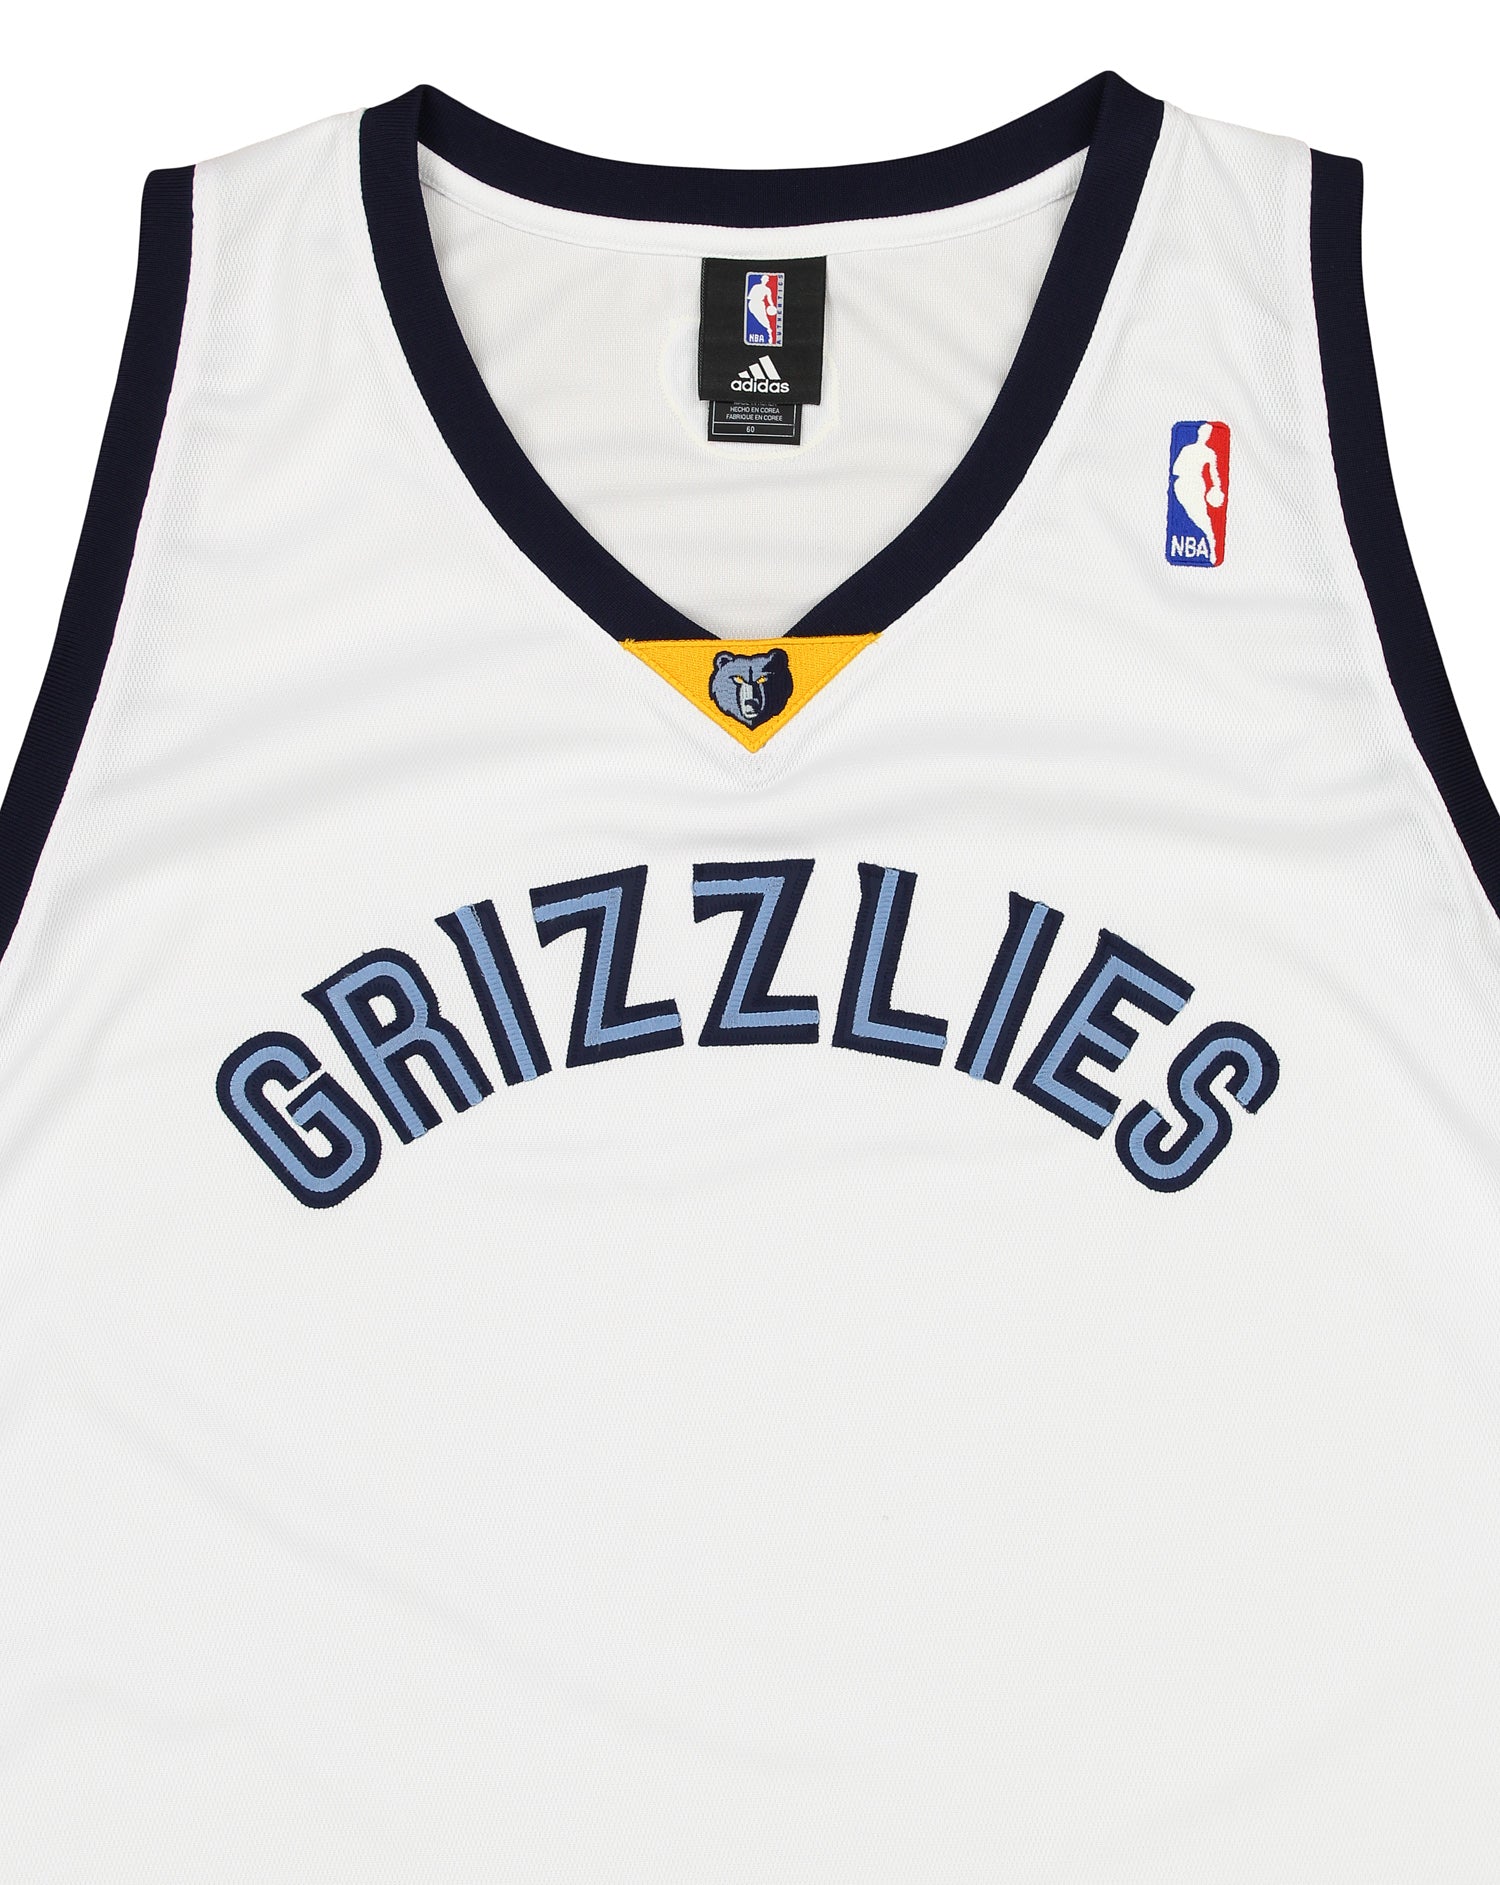 Grizzlies Basketball Jersey